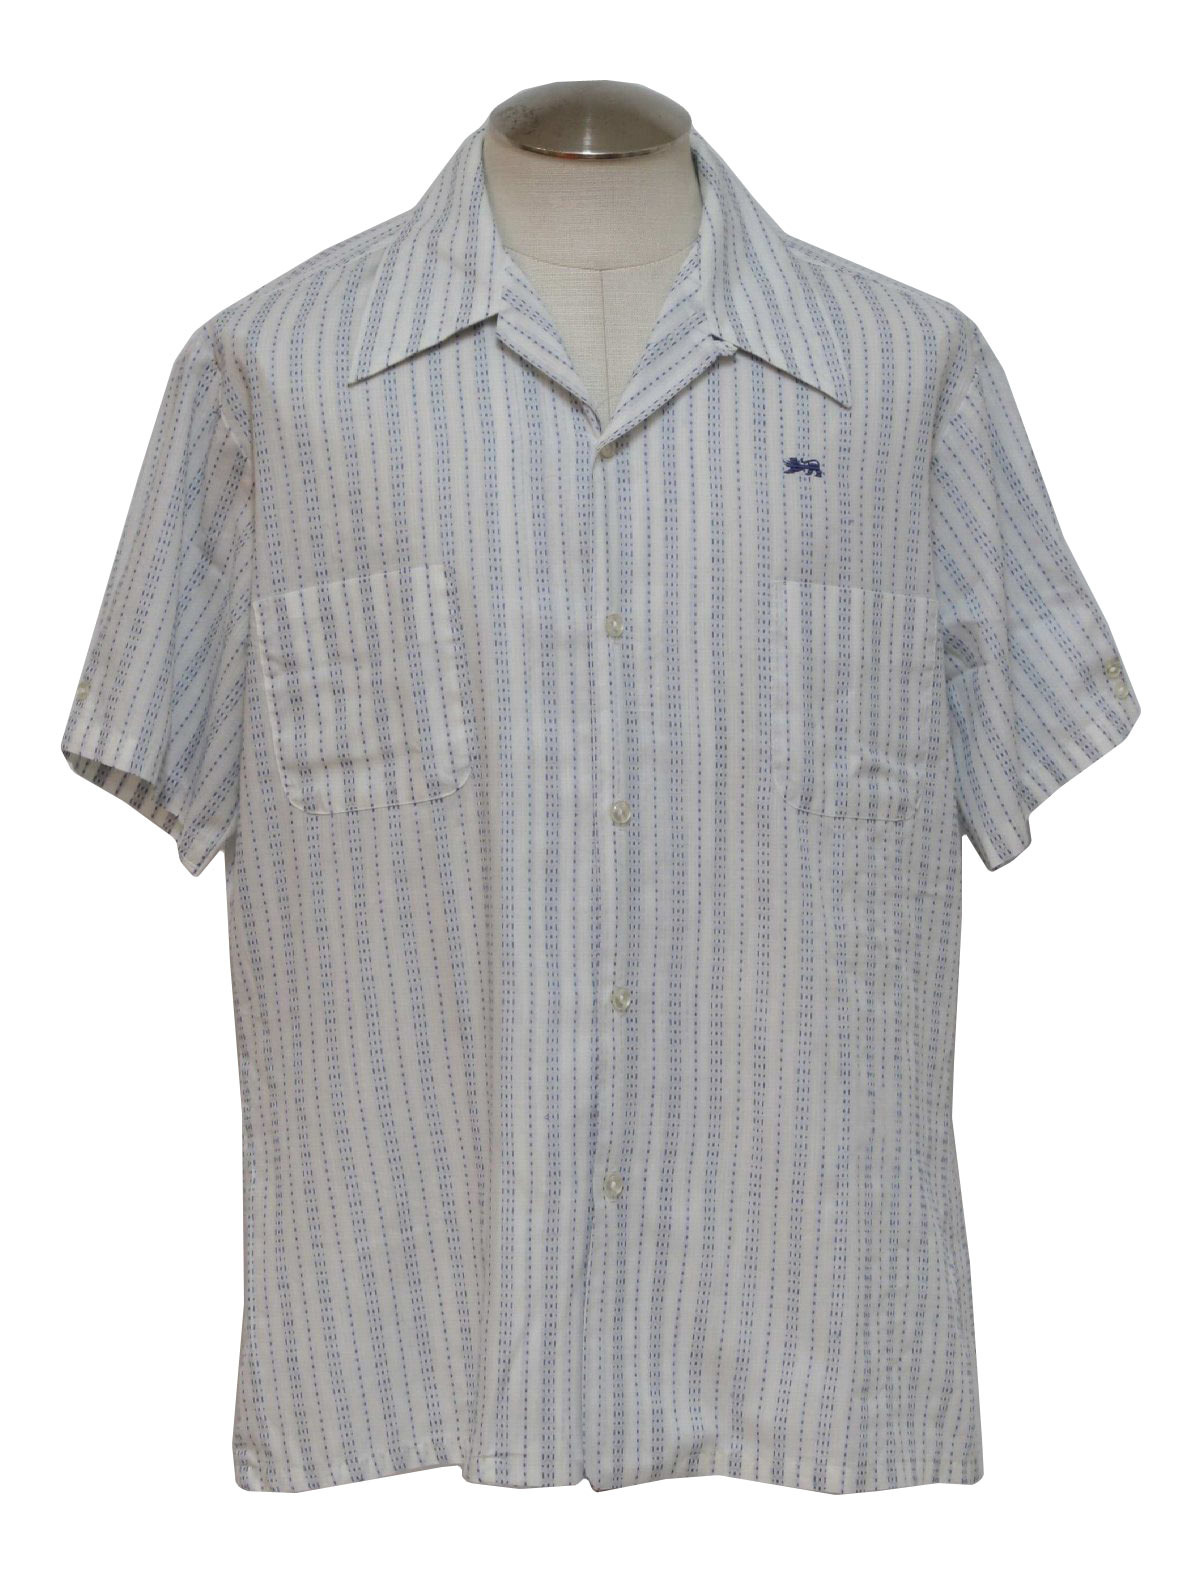 Vintage 1970's Shirt: Early 70s -Mr. California- Mens white, cobalt ...